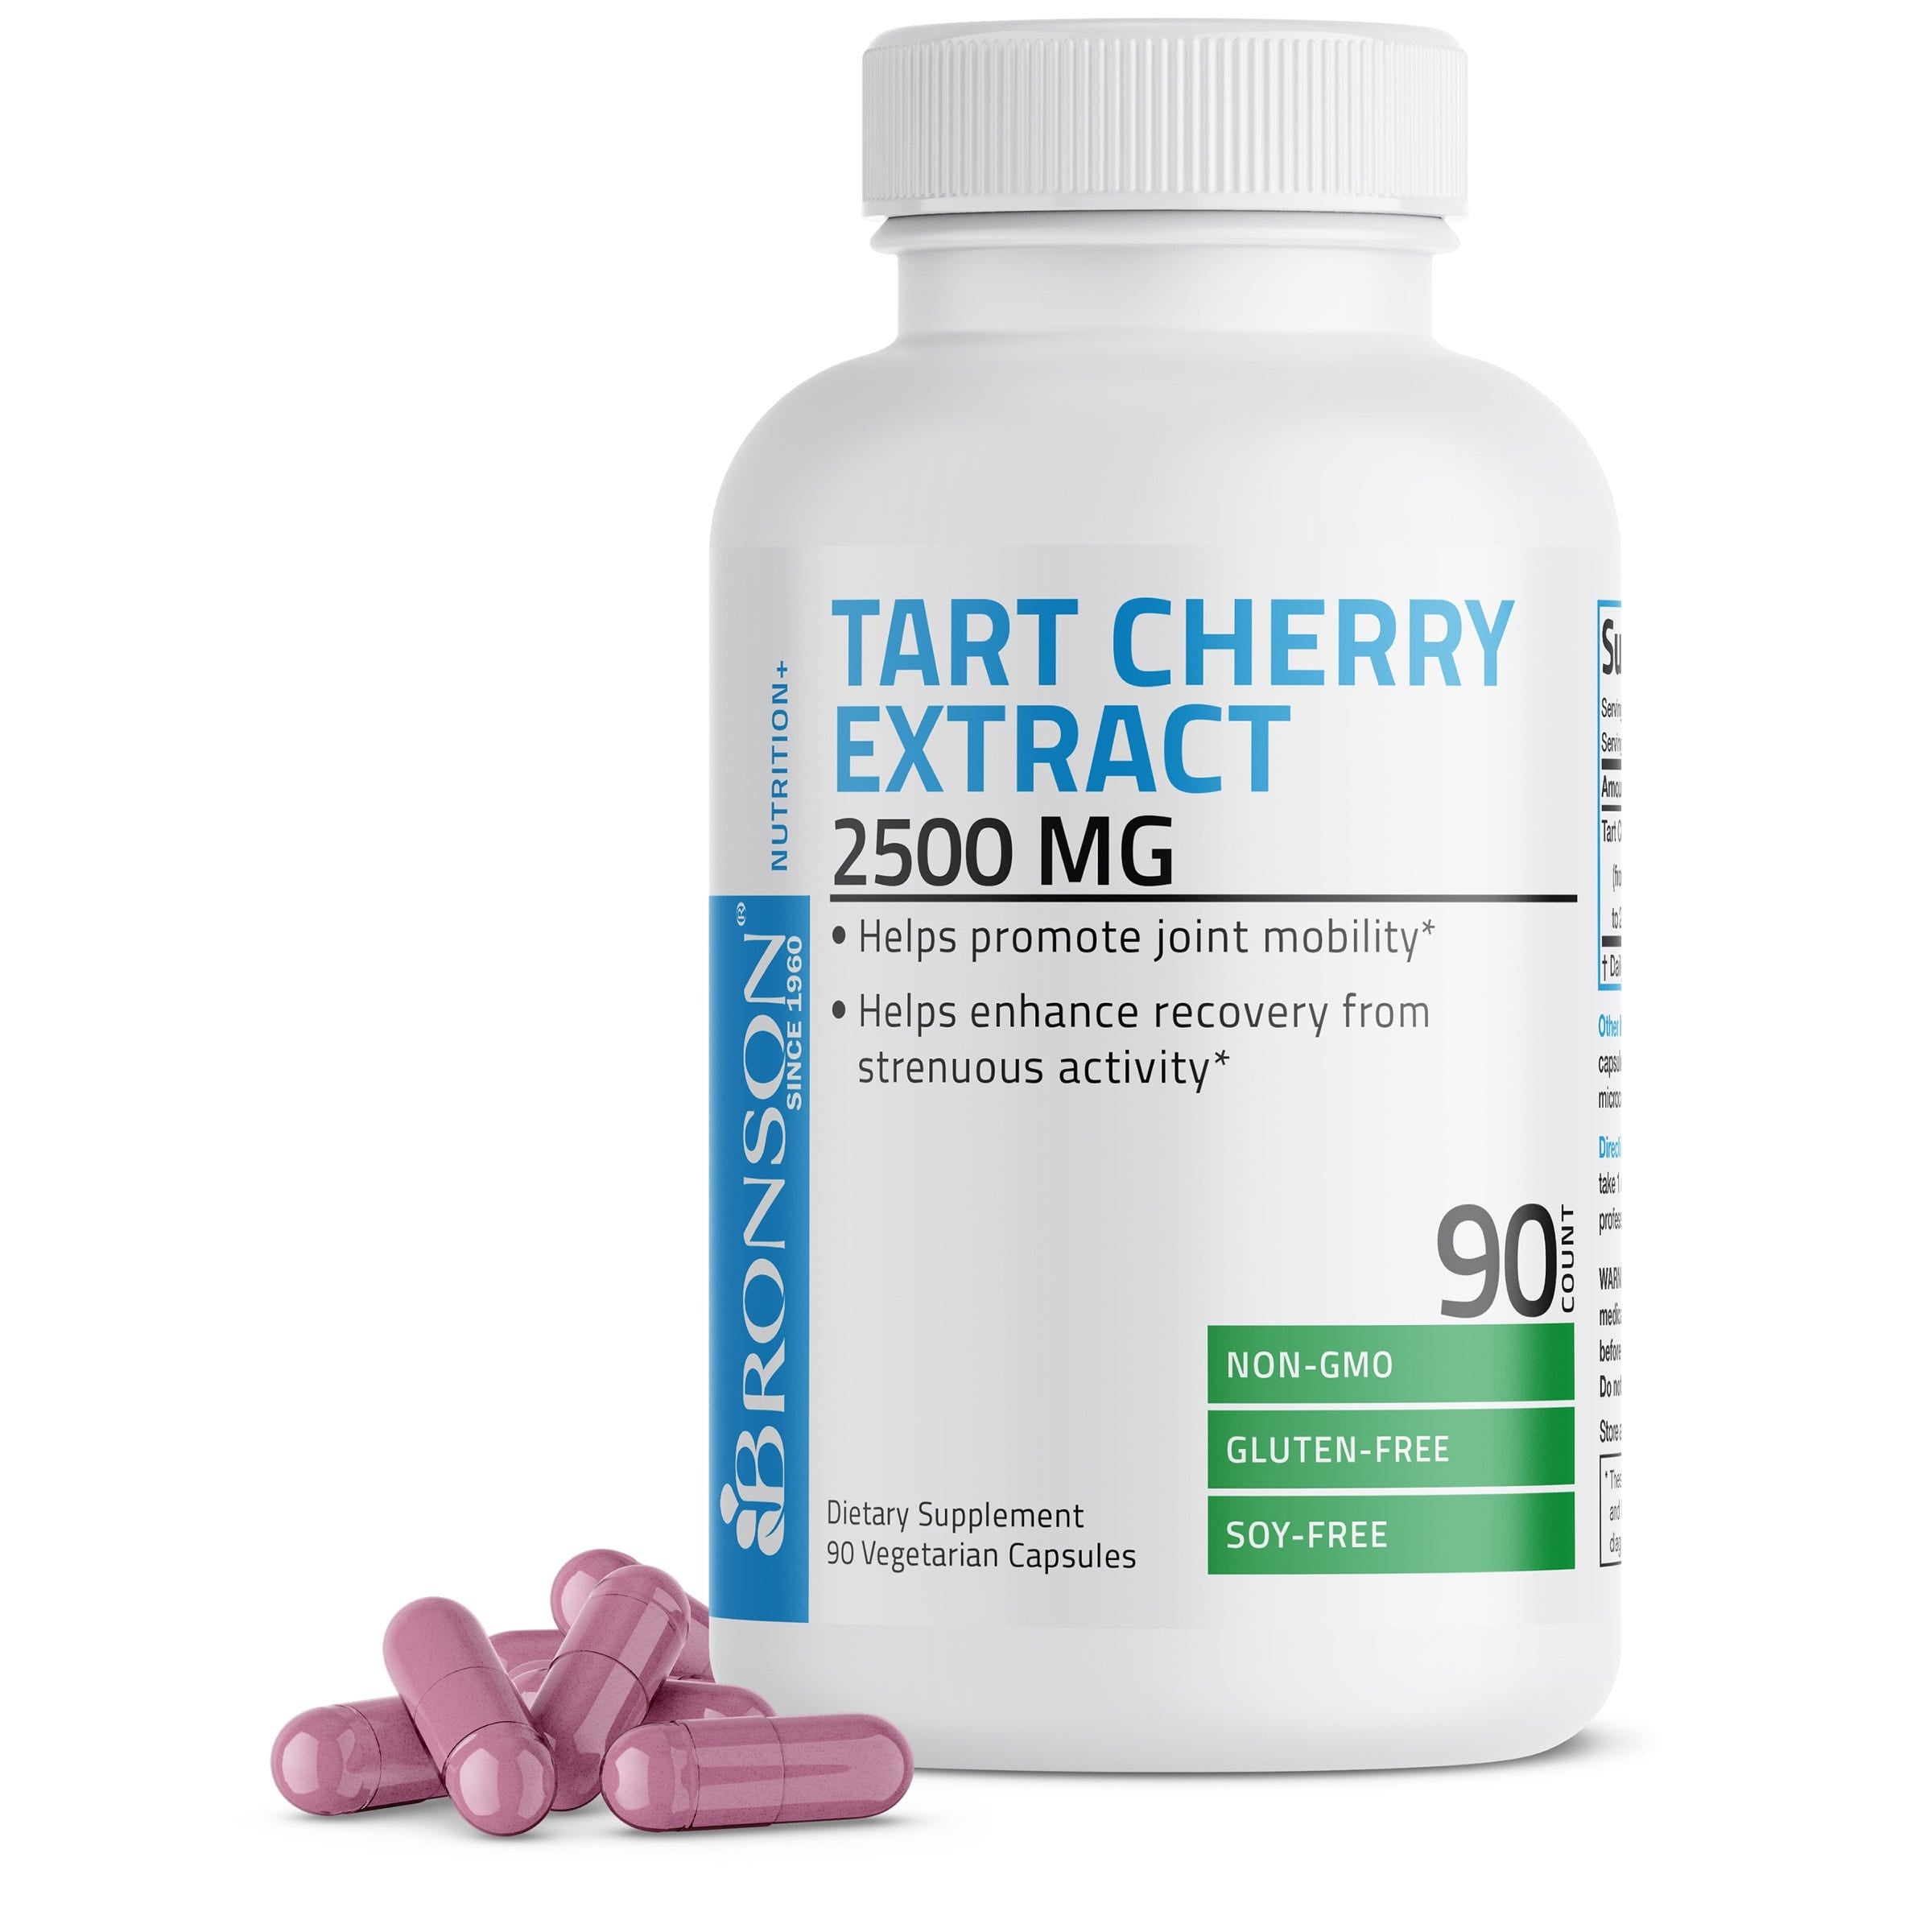 Tart Cherry Extract - 2,500 mg view 1 of 6